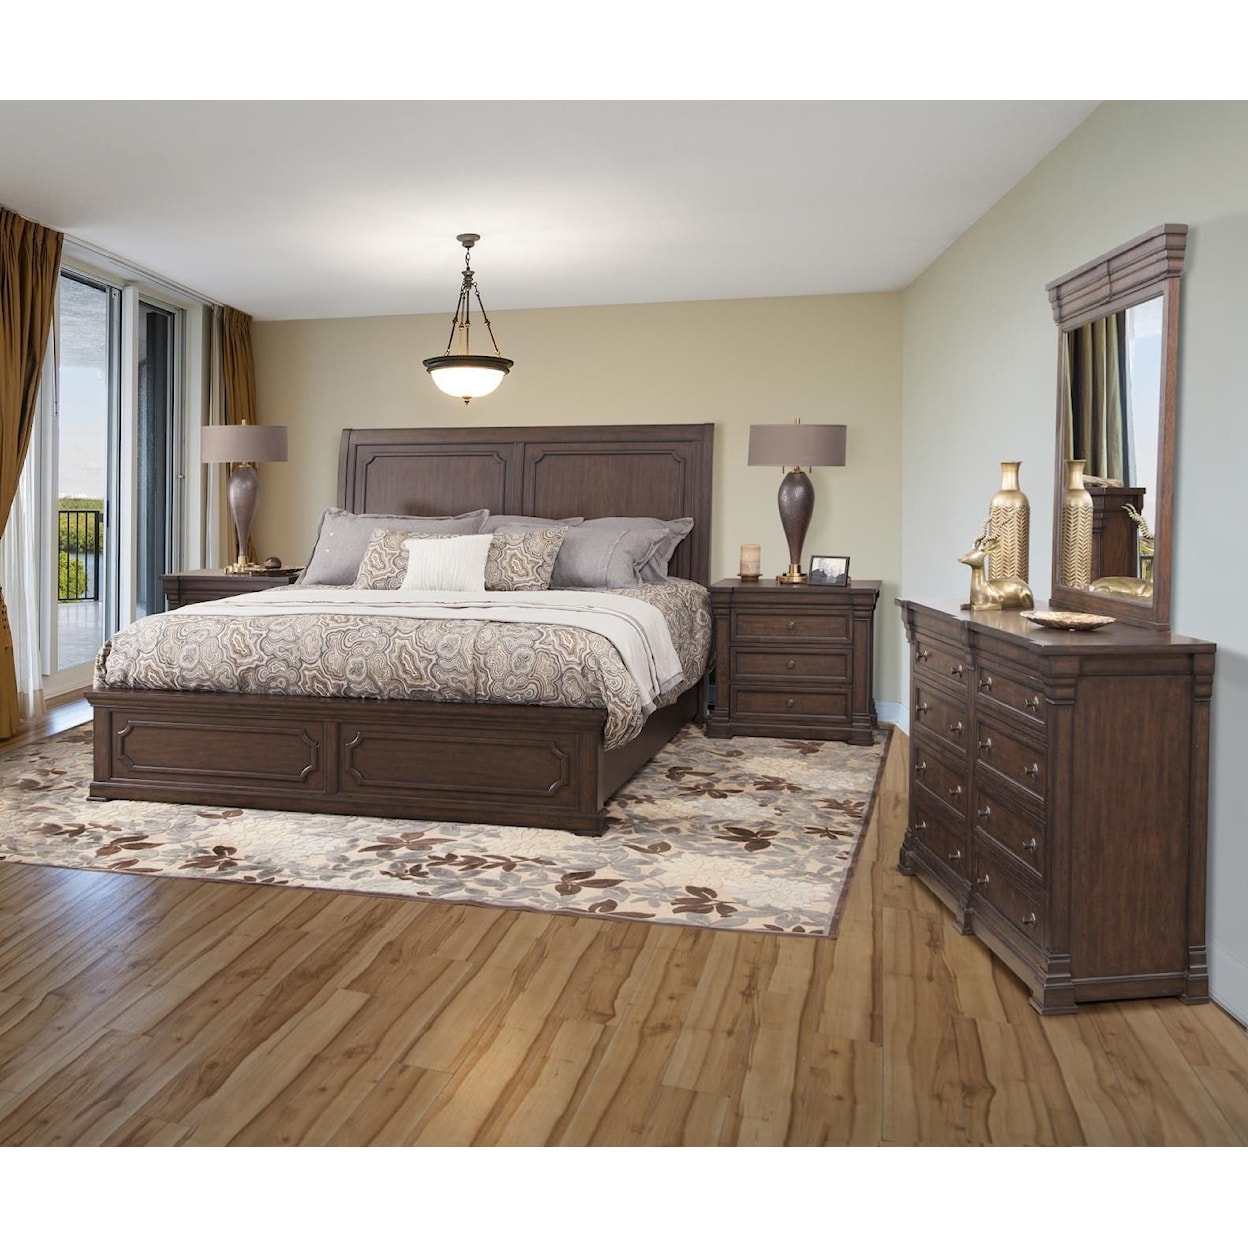 American Woodcrafters Kestrel Hills 5pc Queen Bedroom Group